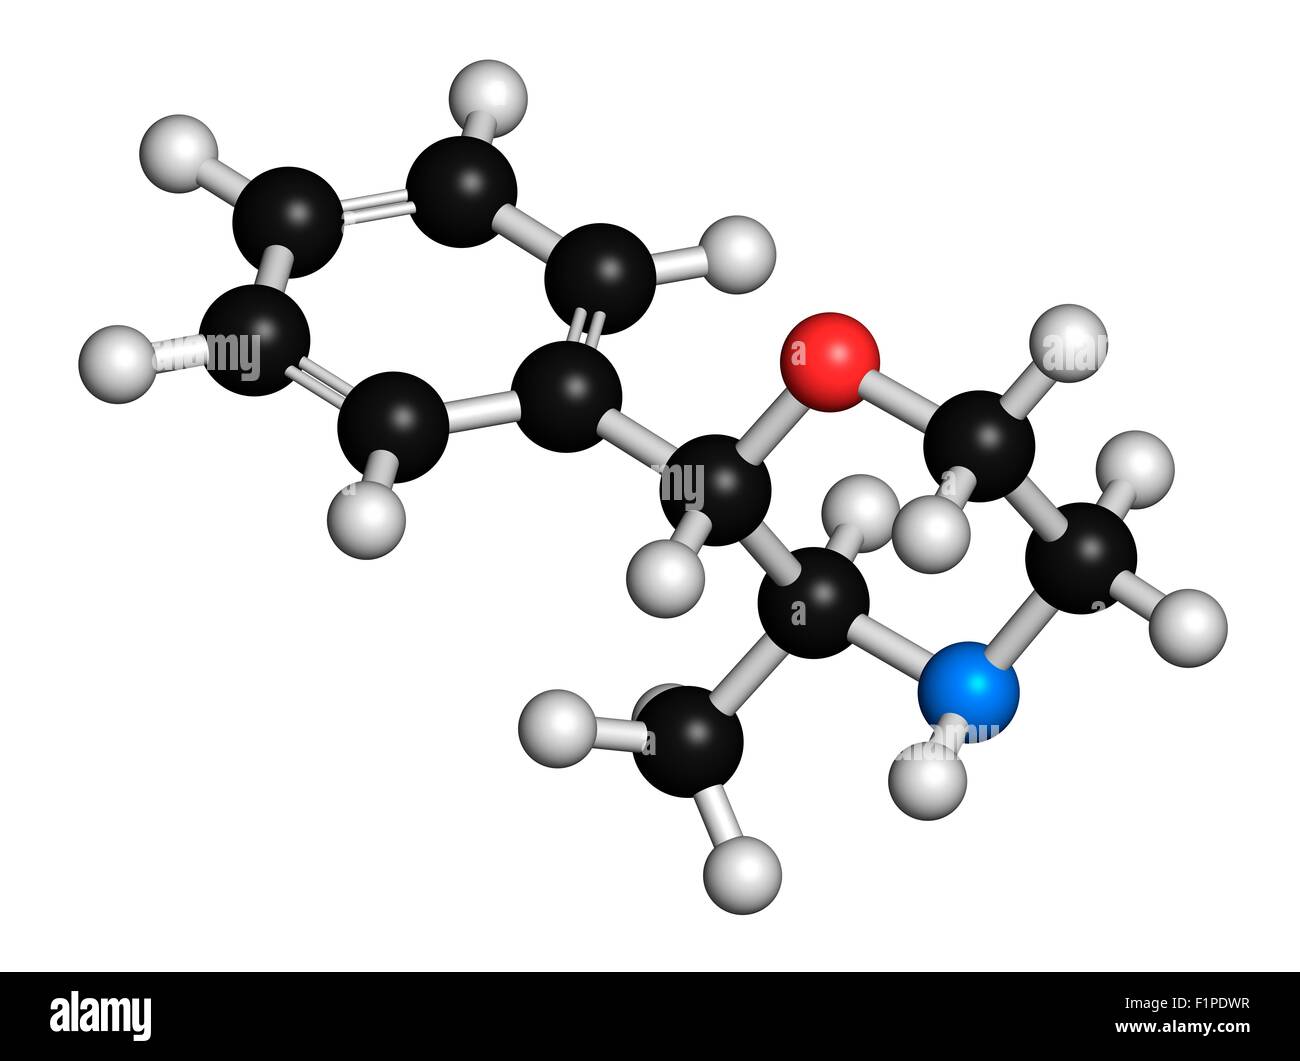 Als Stimulans und Appetit Suppressant, die Atome als dargestellt werden verwendet Phenmetrazine Stimulans Wirkstoffmolekül (Amphetamin-Klasse) Stockfoto